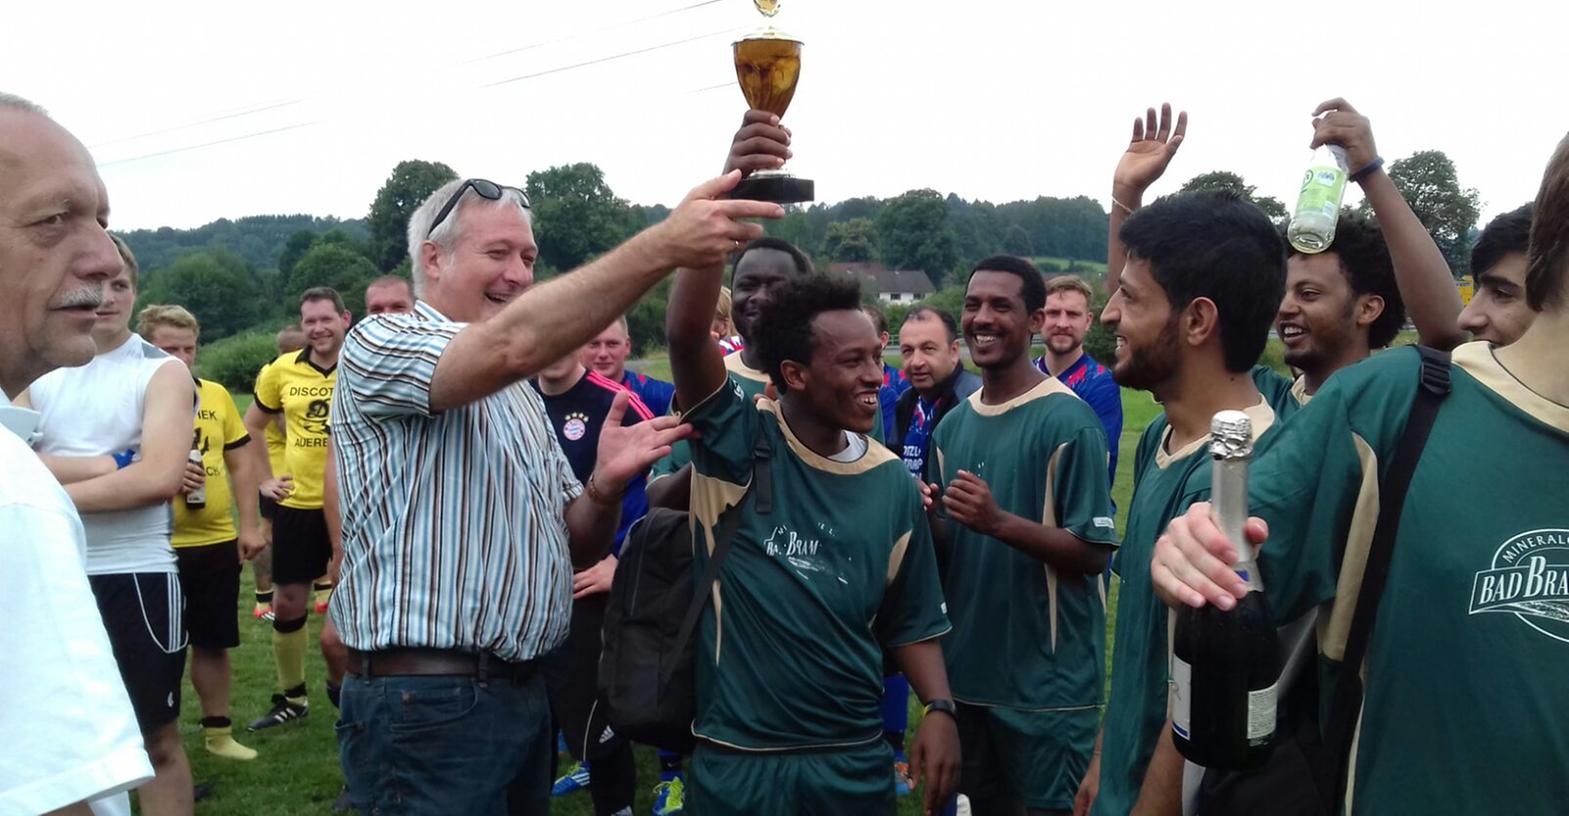 Die Flüchtlingsmannschaft aus Pegnitz beteiligte sich beim Dorffest in Buchau am Fußballturnier. Bürgermeister Uwe Raab (gstreiftes Hemd)überreichte den Pokal.